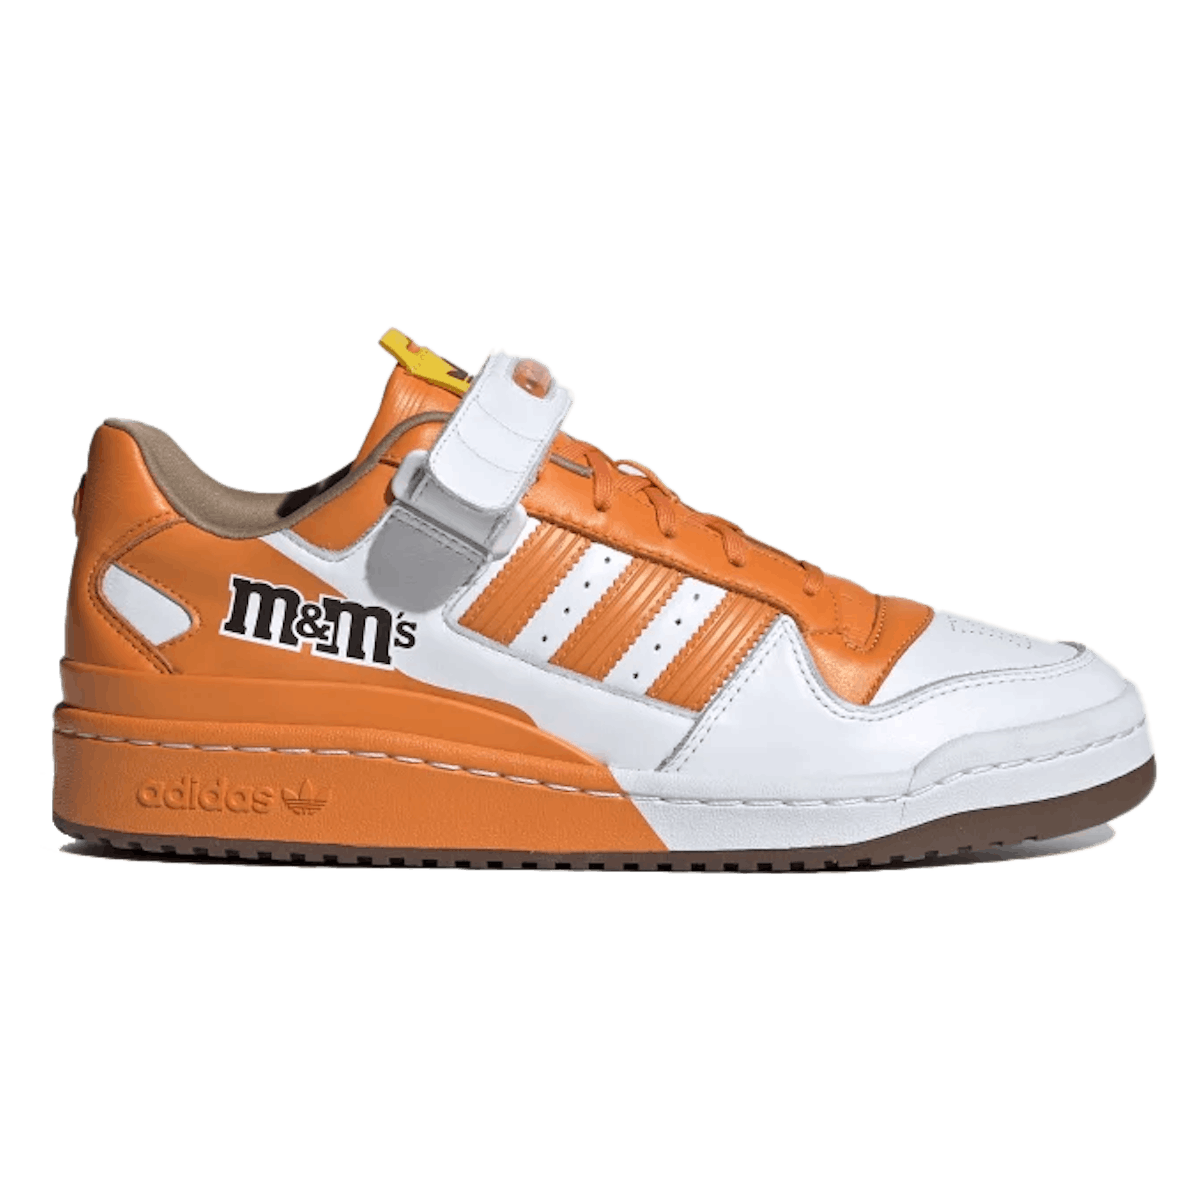 M&M’s x Adidas Forum '84 Low "Orange"